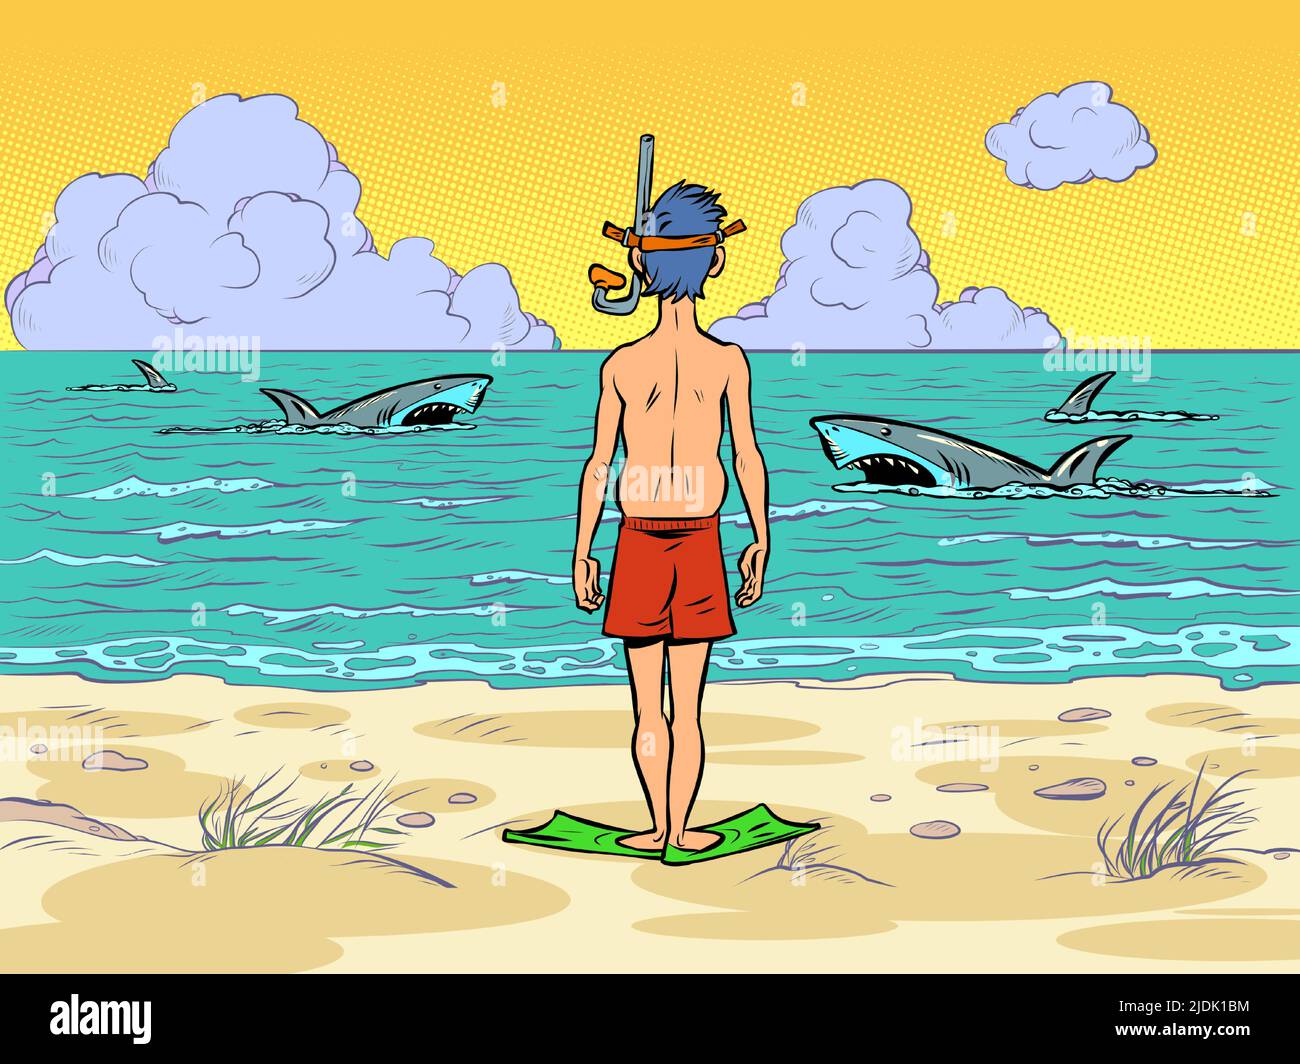 tiburones en el agua, un hombre con una máscara de buceo se está preparando para bucear, de pie en la orilla del mar Ilustración del Vector